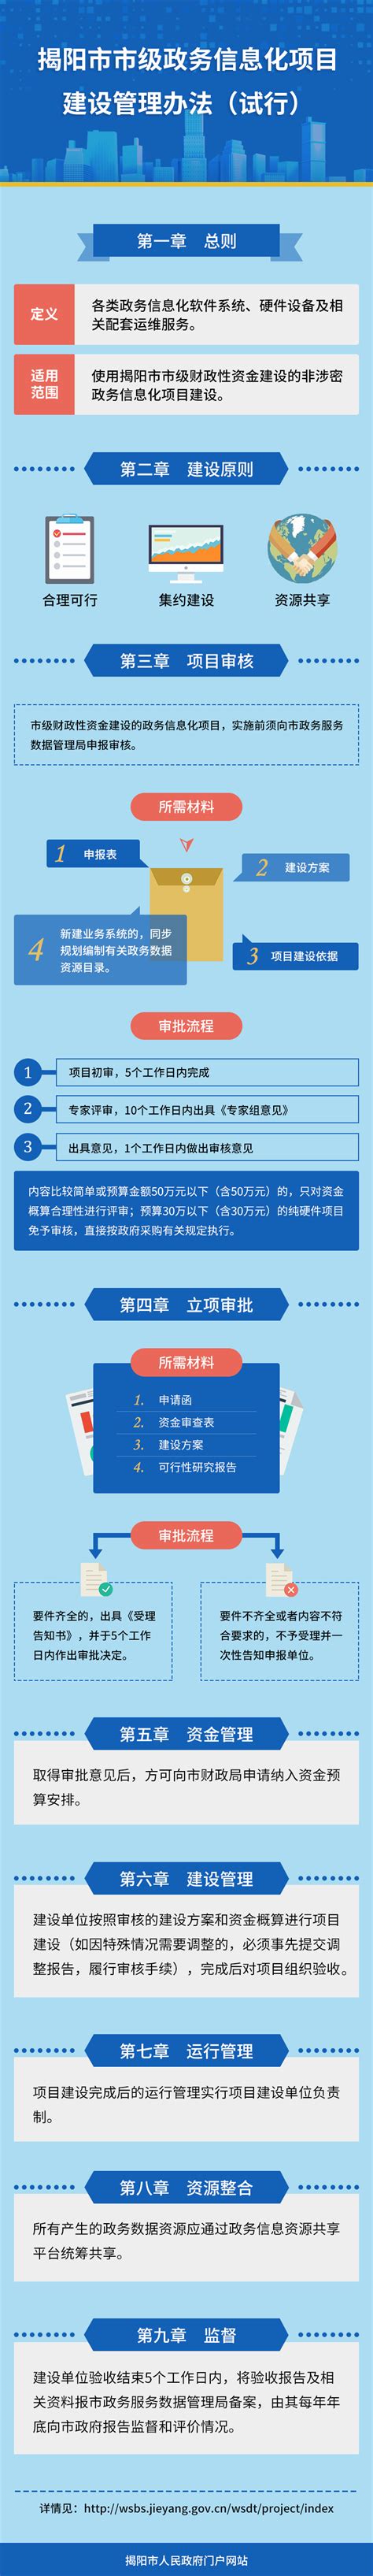 揭阳市建筑业诚信信息管理平台